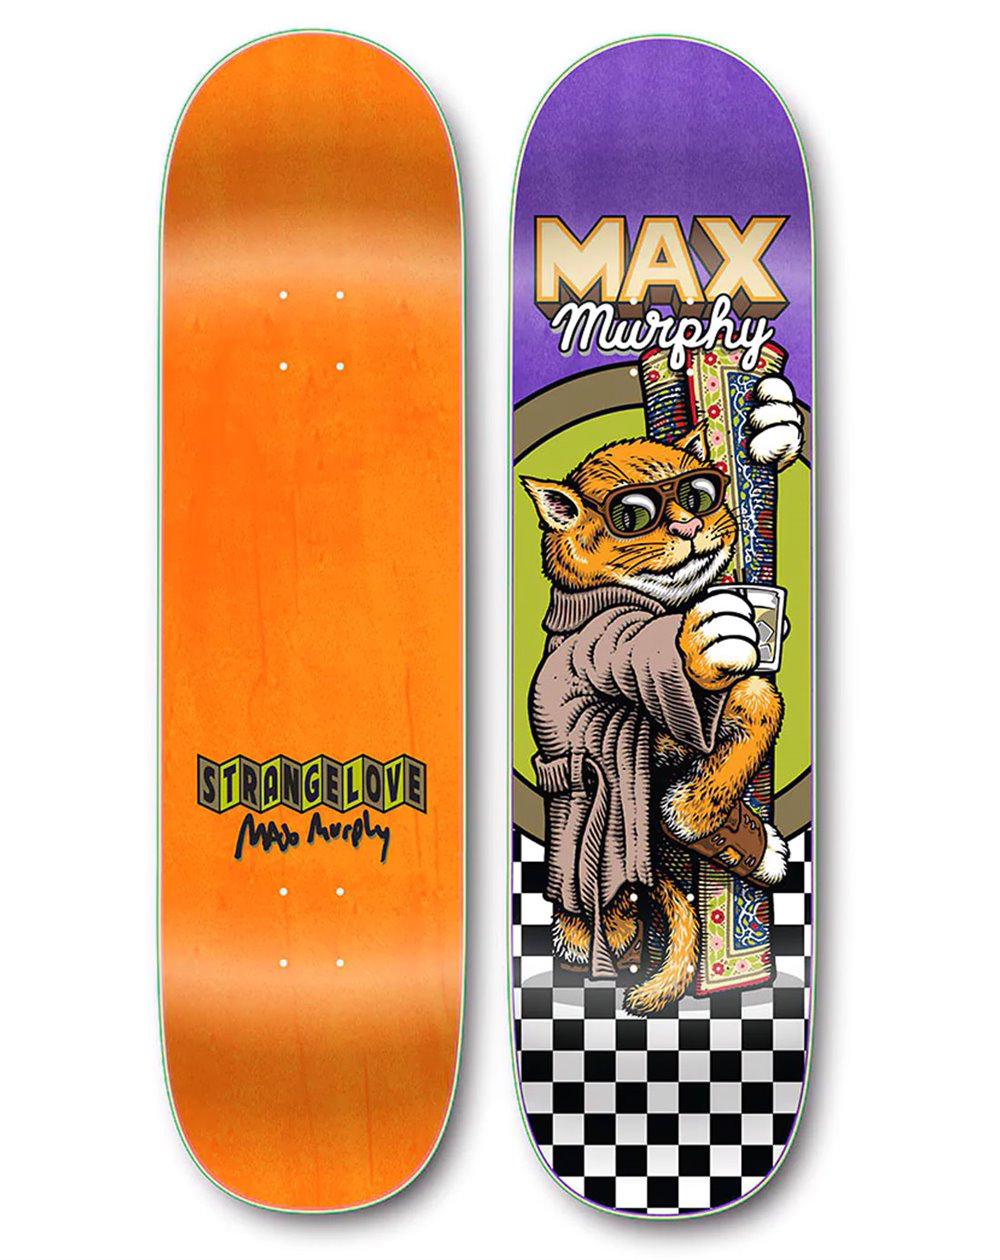 StrangeLove Louis the Cat (Max Murphy) 8.5" Skateboard Deck